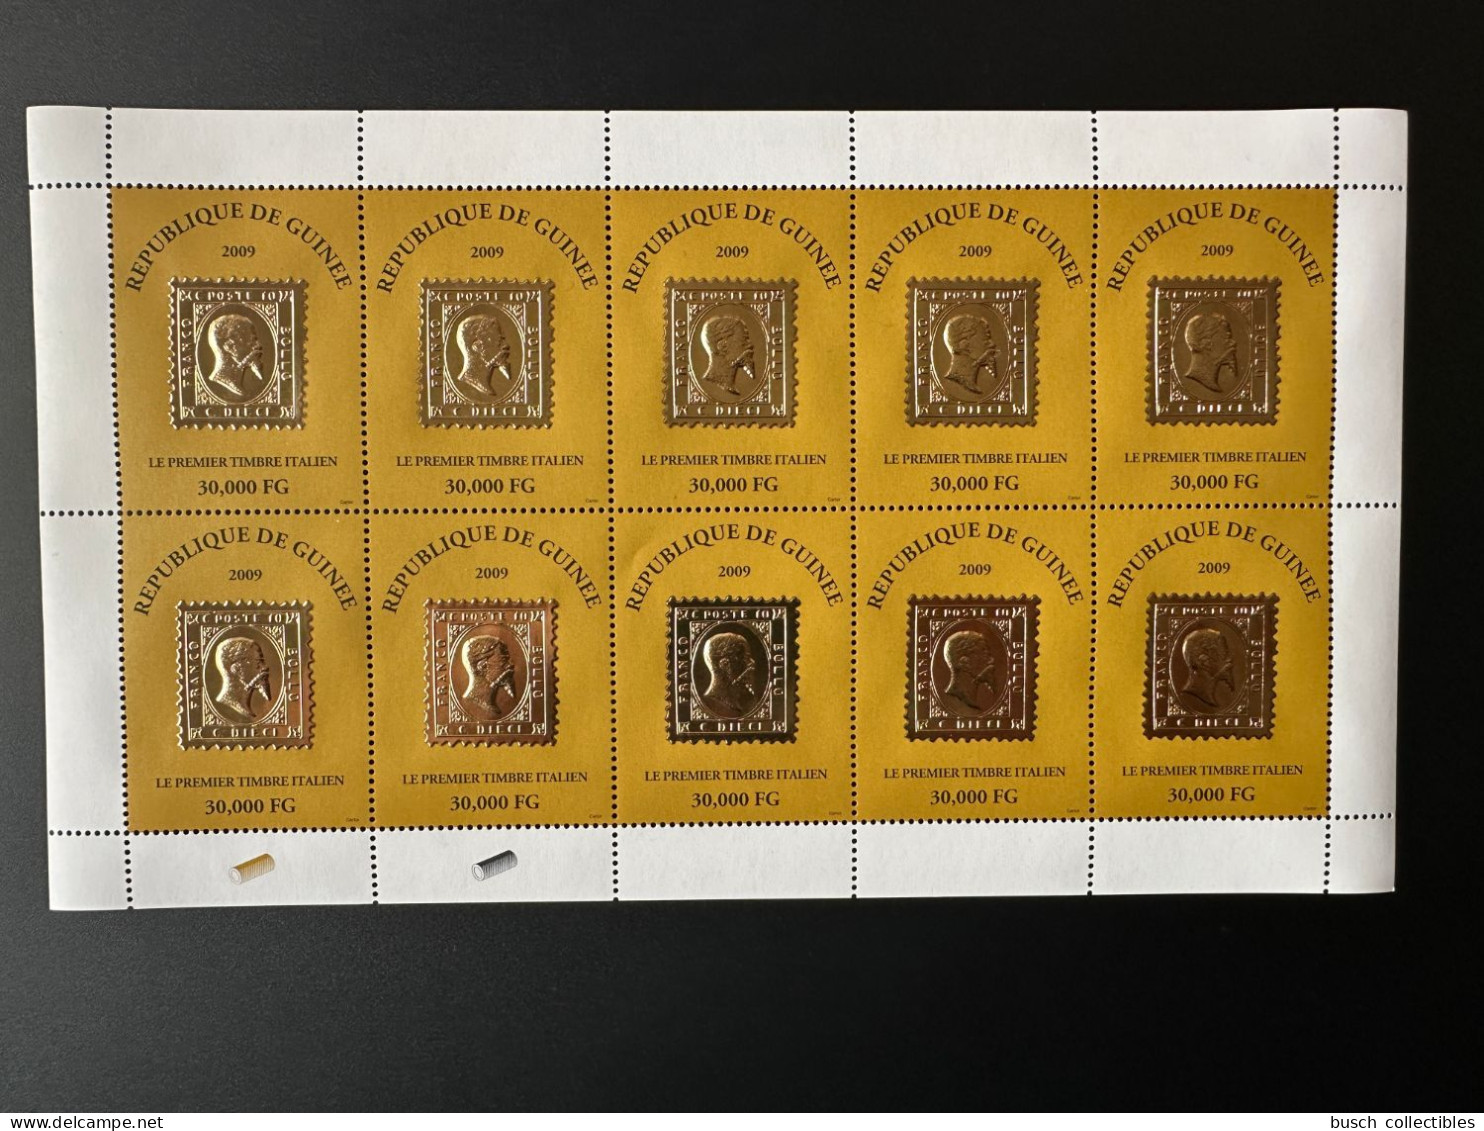 Guinée Guinea 2009 Mi. 6488 Feuillet Kleinbogen Premier Timbre Italien First Italian Stamp On Stamp Gold Or Francobollo - Guinée (1958-...)